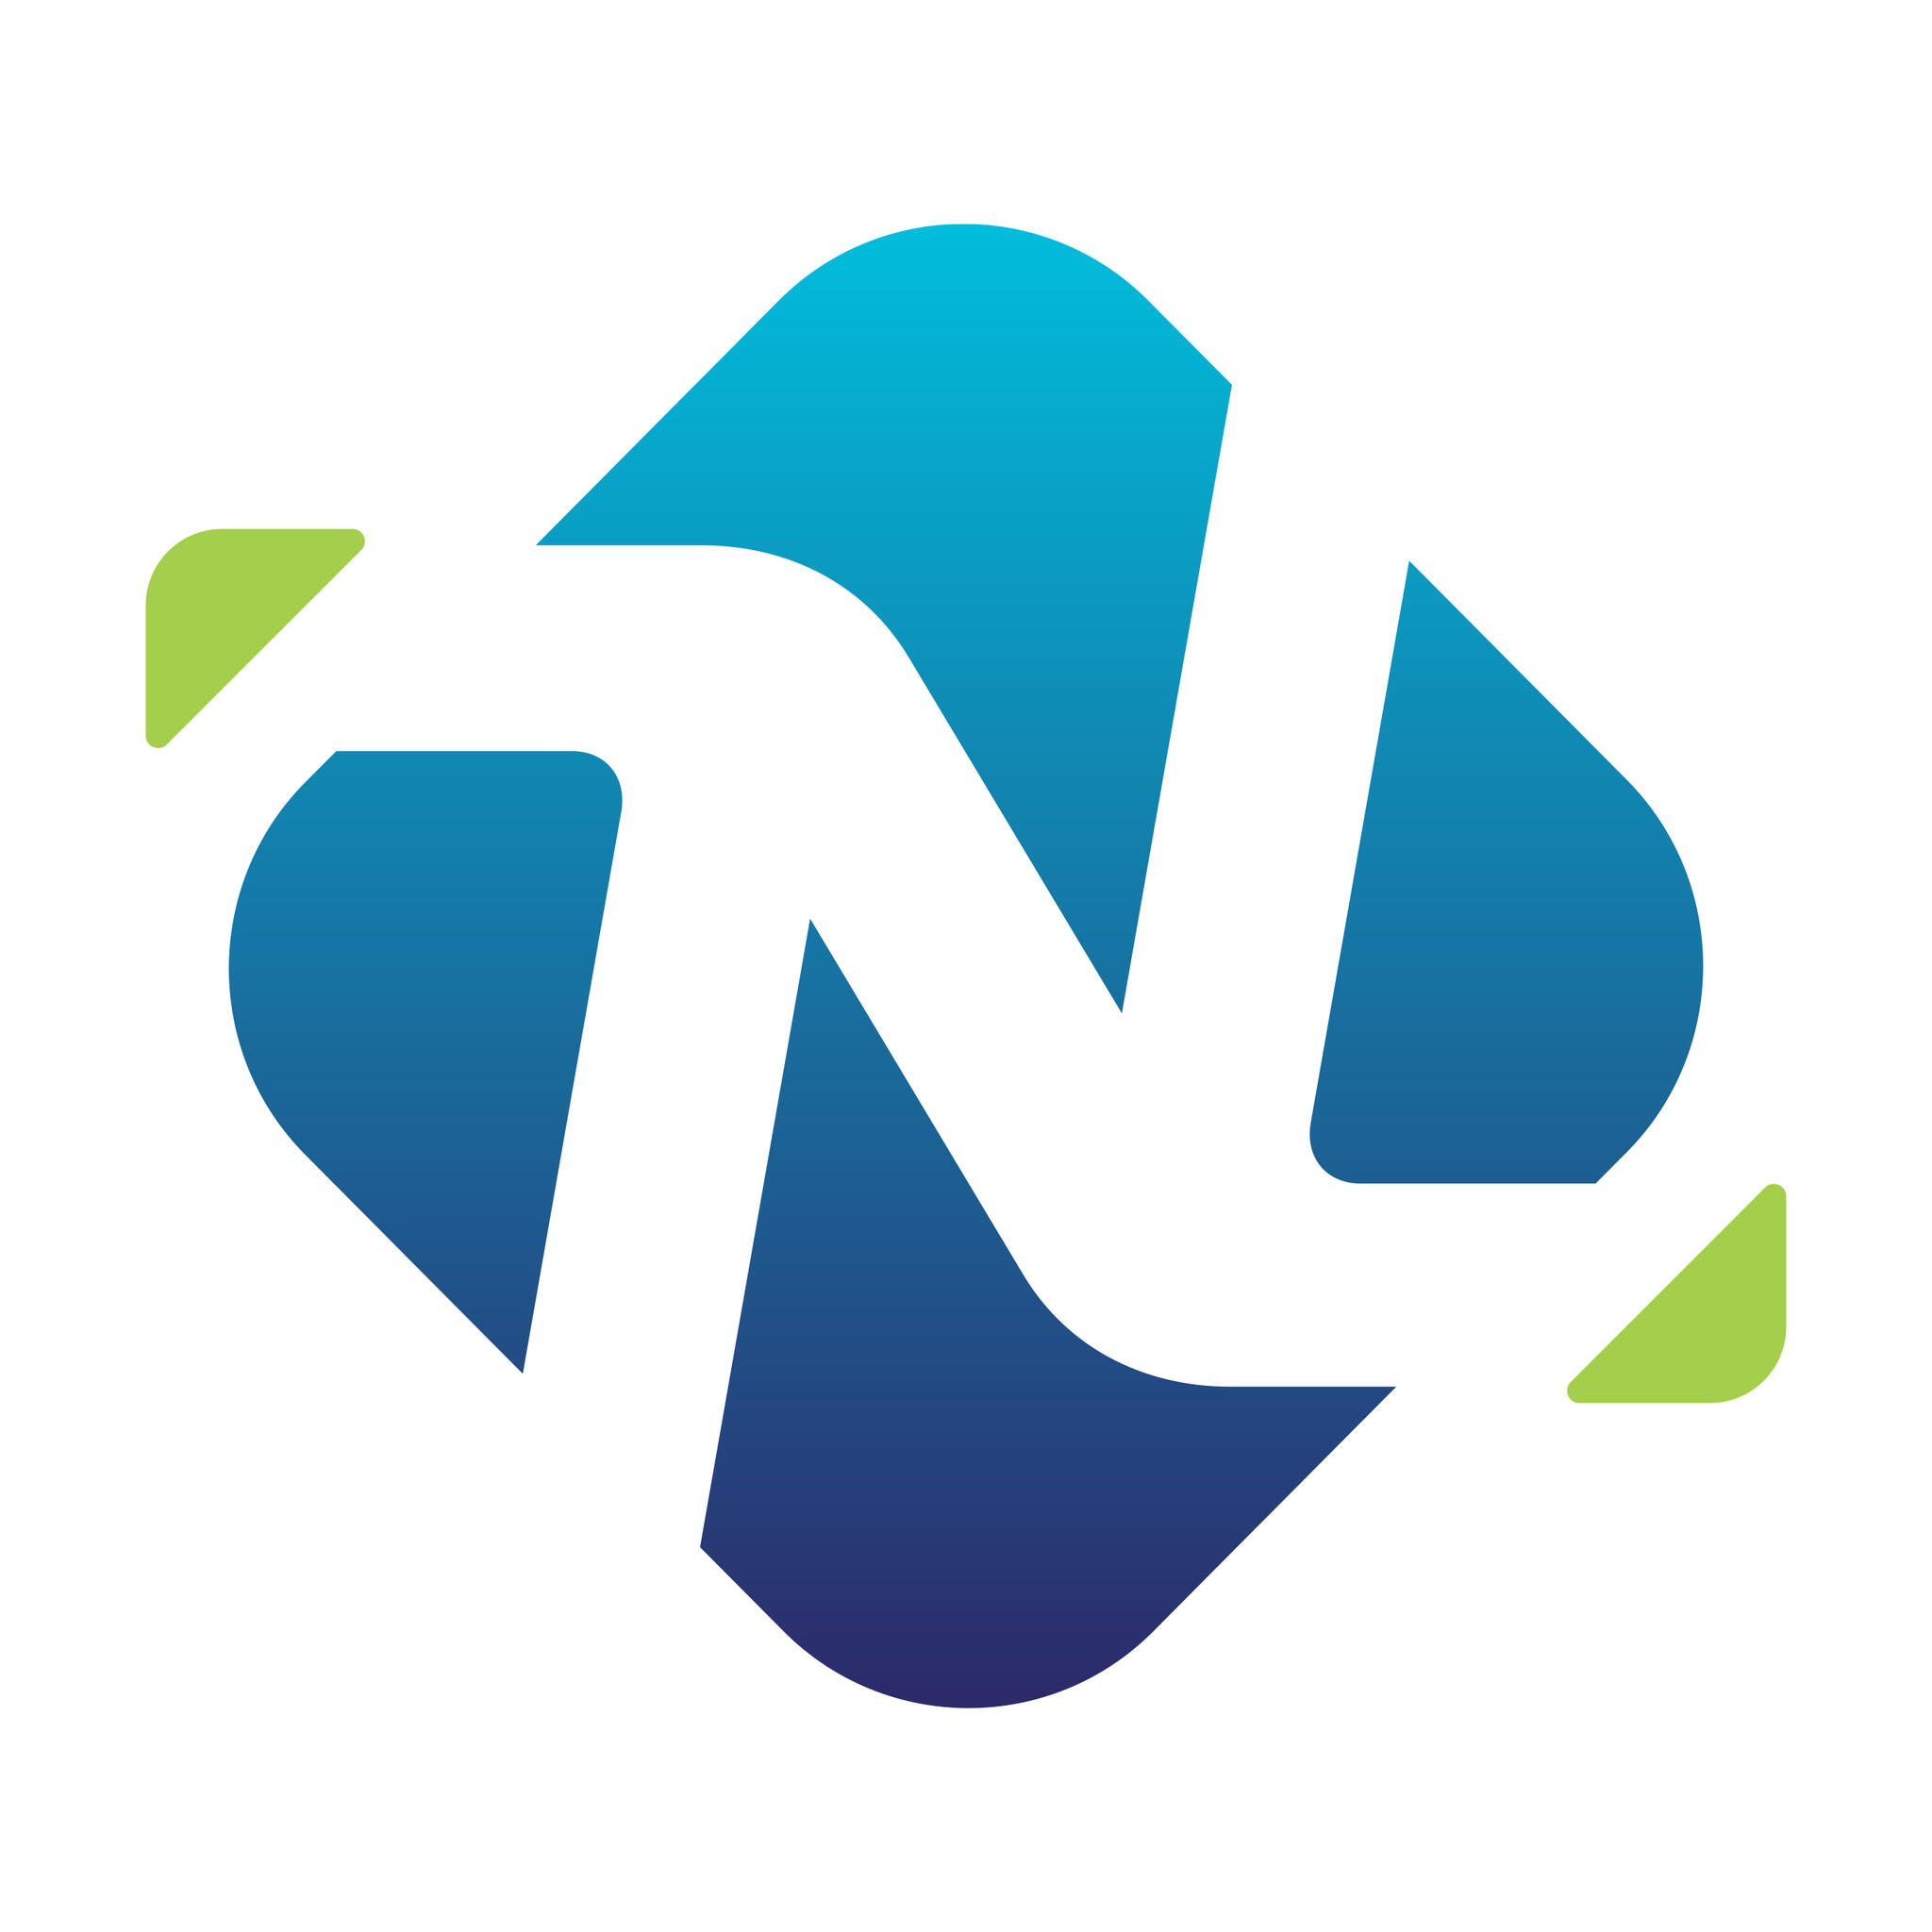 Download Free Nextdoor PSD Mockup Template